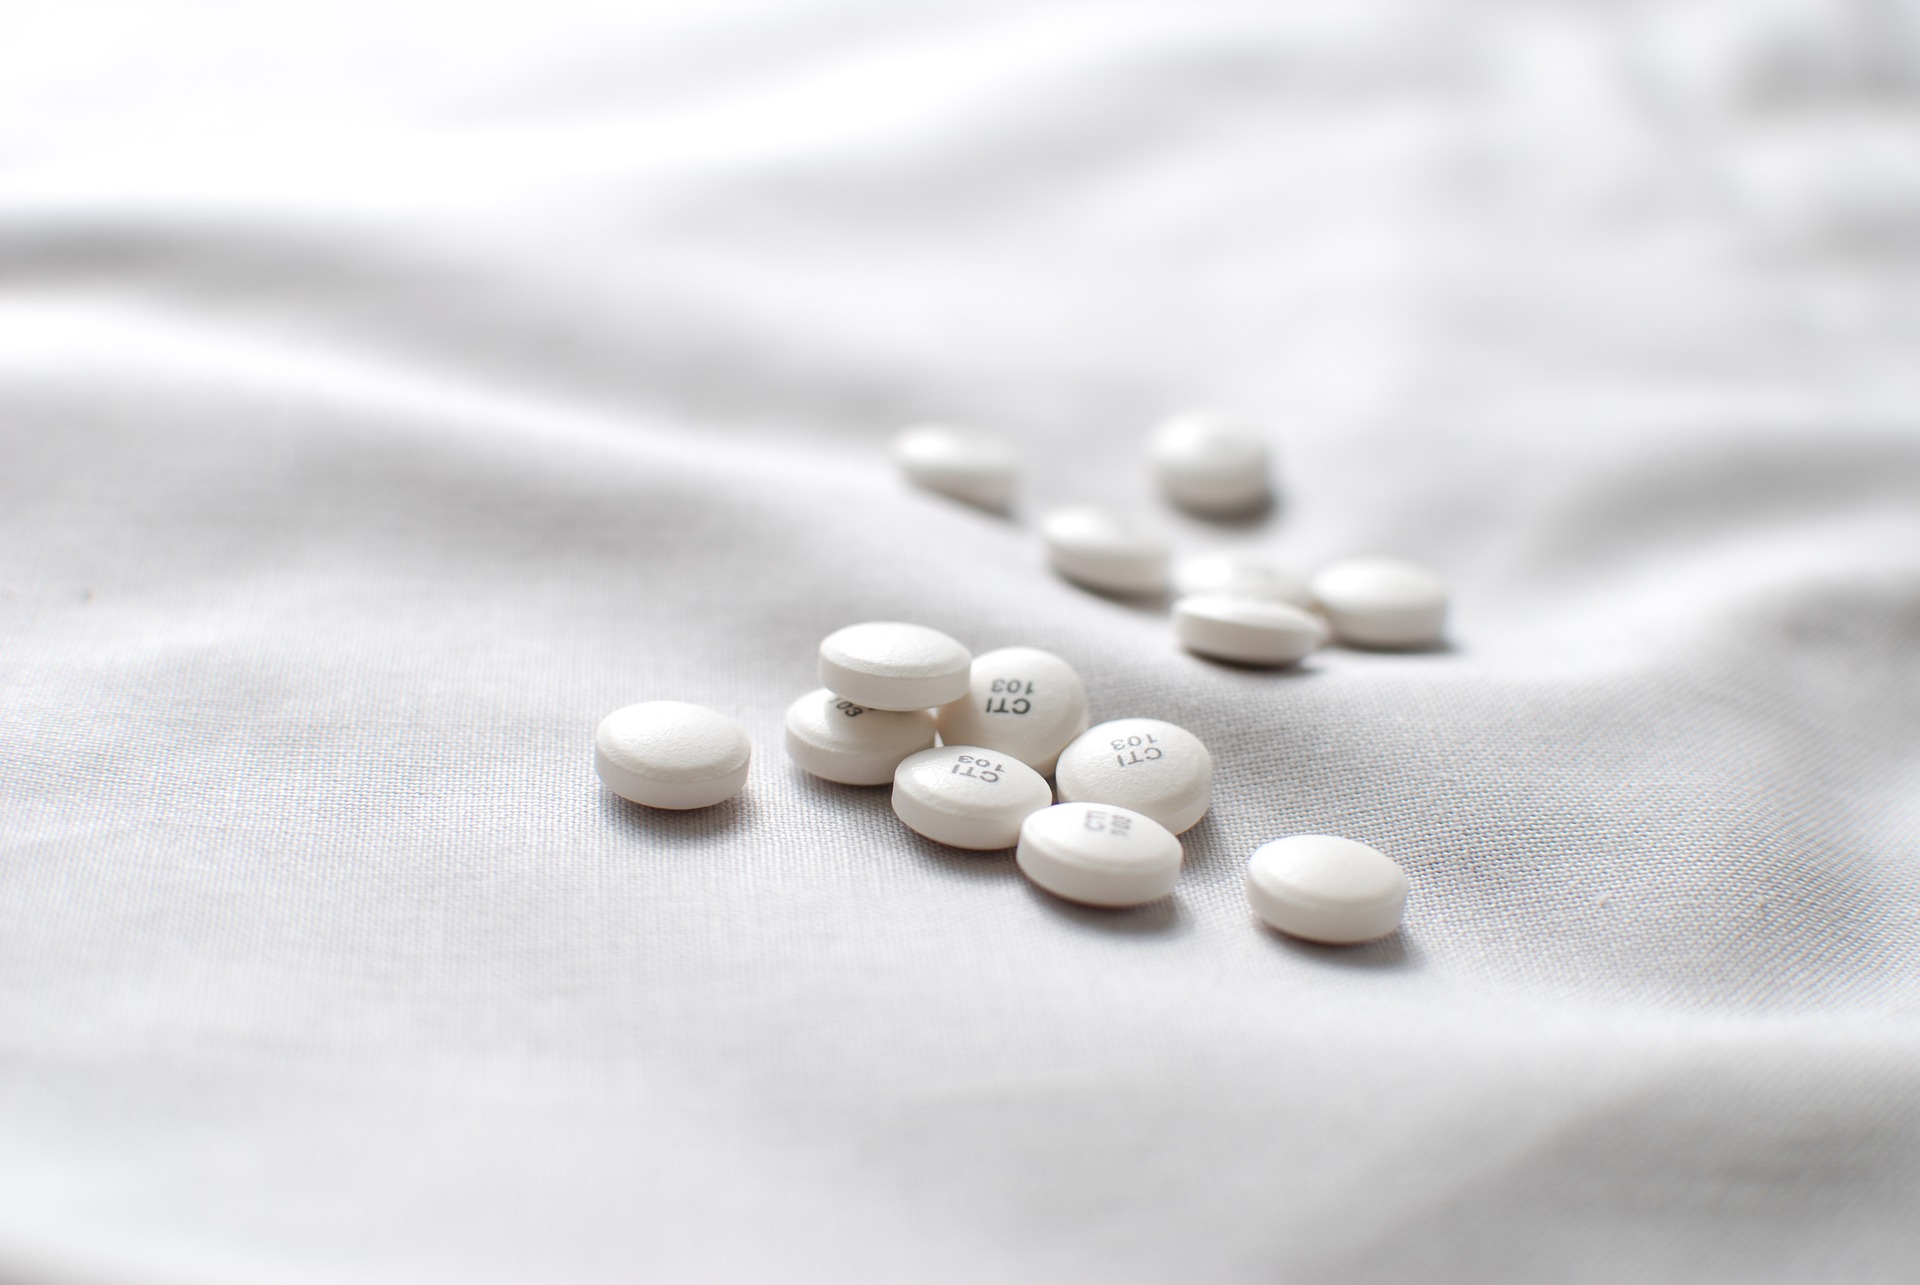 Χάπι κατά του κορονοϊού: Άνοιξε η πλατφόρμα – Ποιοι μπορούν να το πάρουν